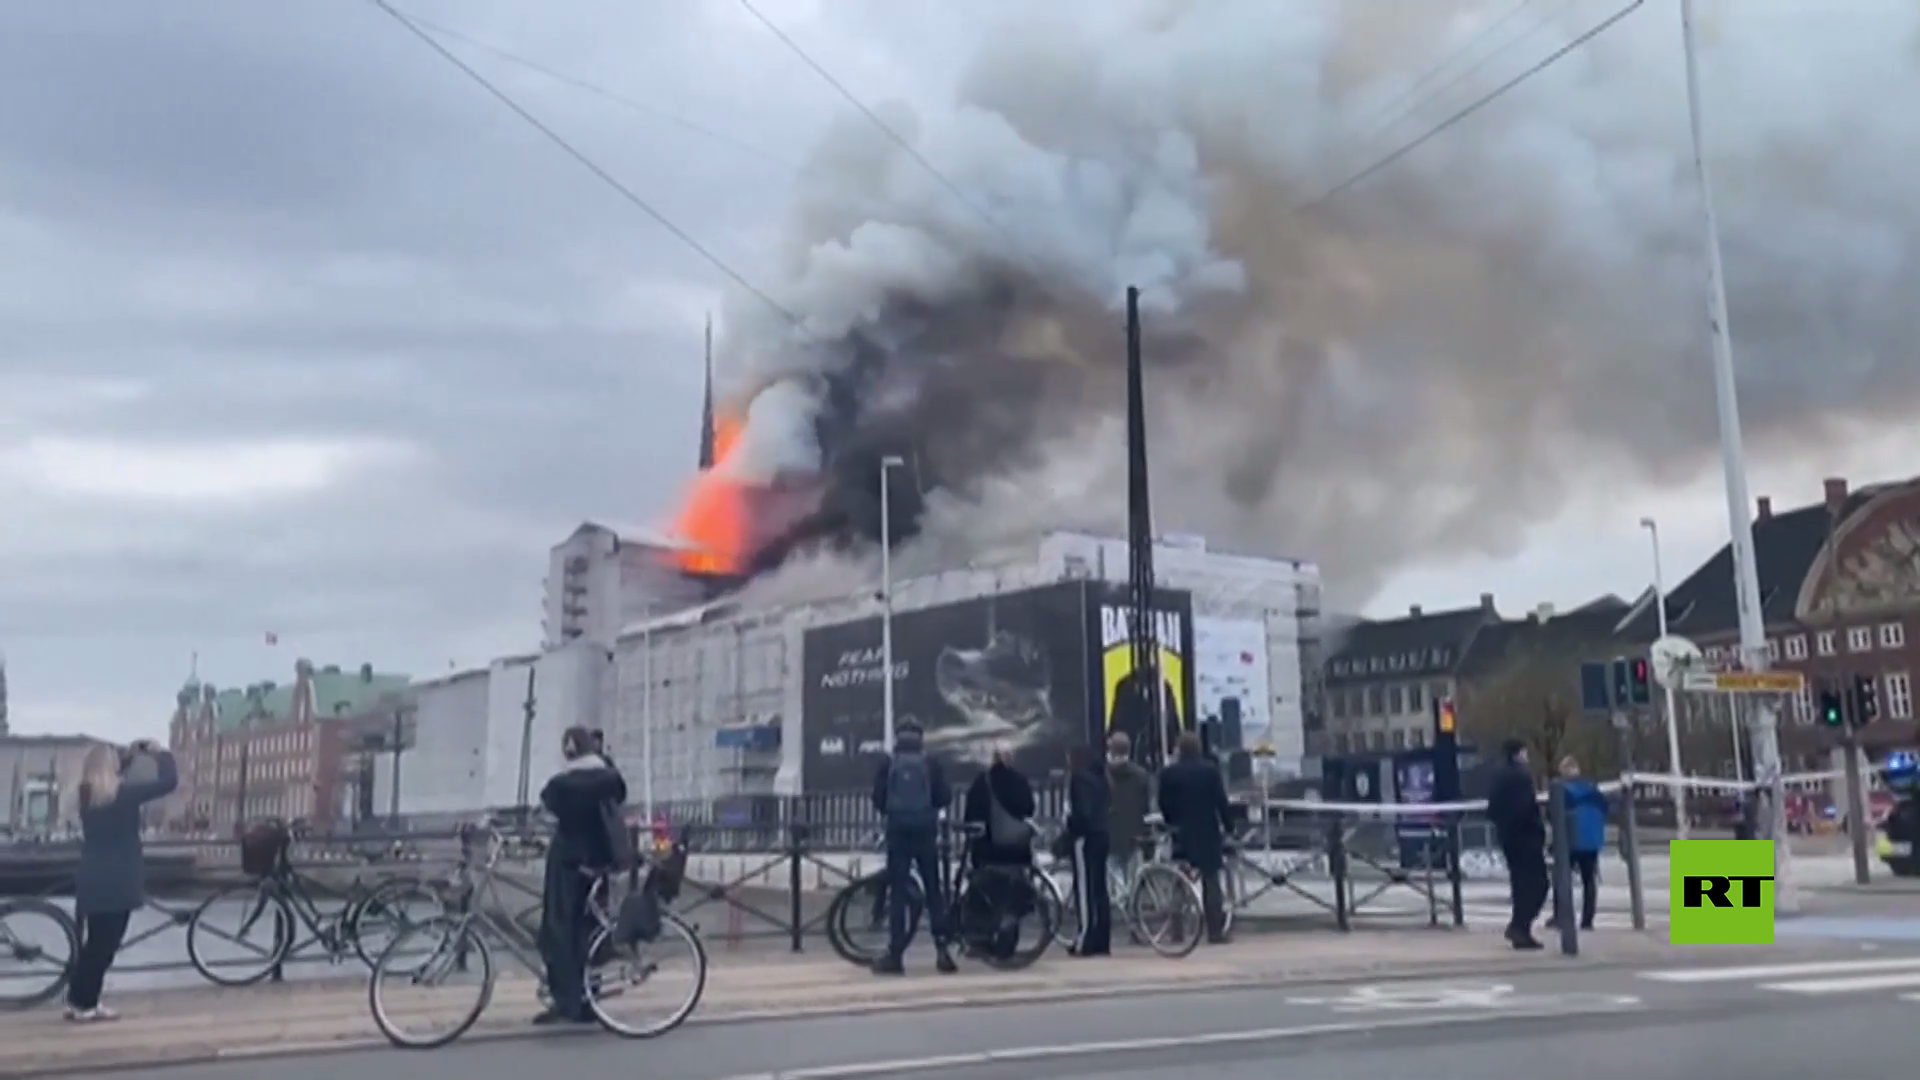 مشاهد جديدة من حريق في كوبنهاغن.. لحظة سقوط برج تاريخي وإنقاذ لوحة فنية ثمينة